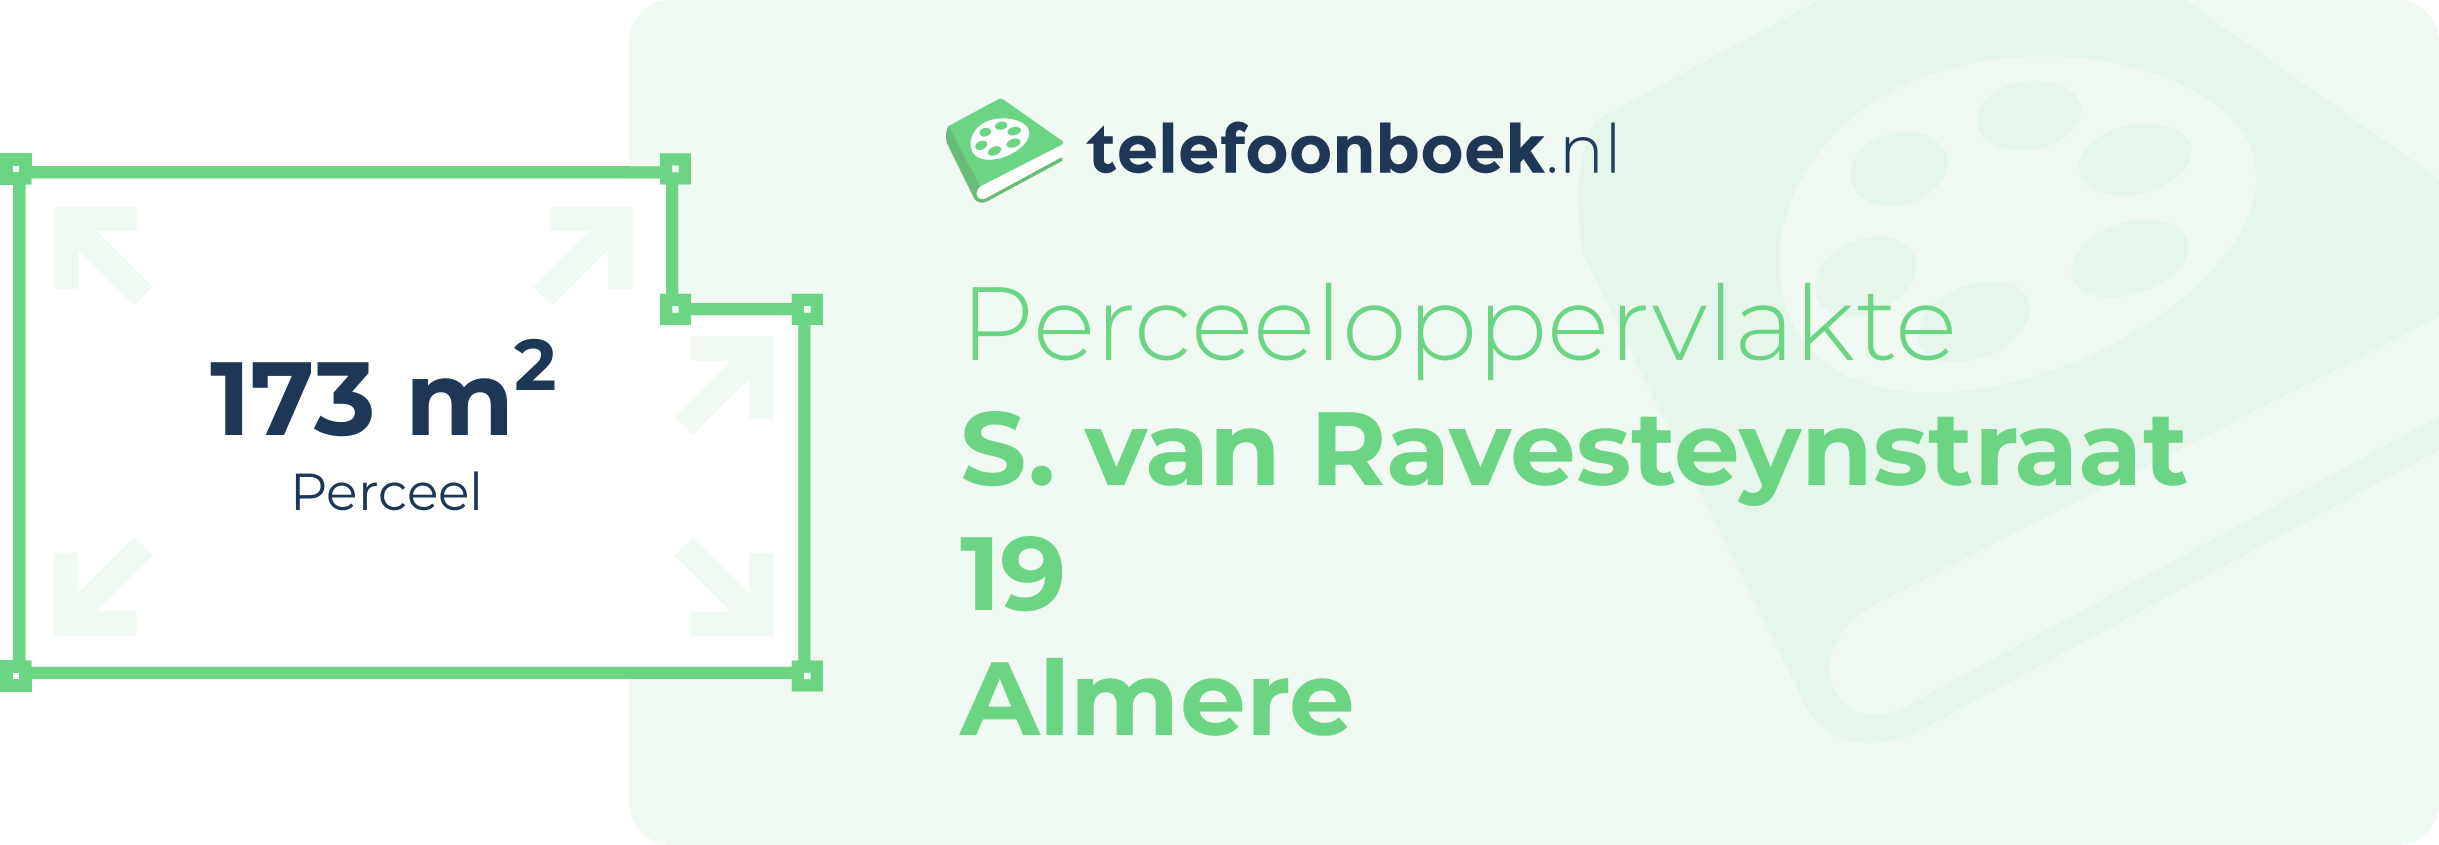 Perceeloppervlakte S. Van Ravesteynstraat 19 Almere